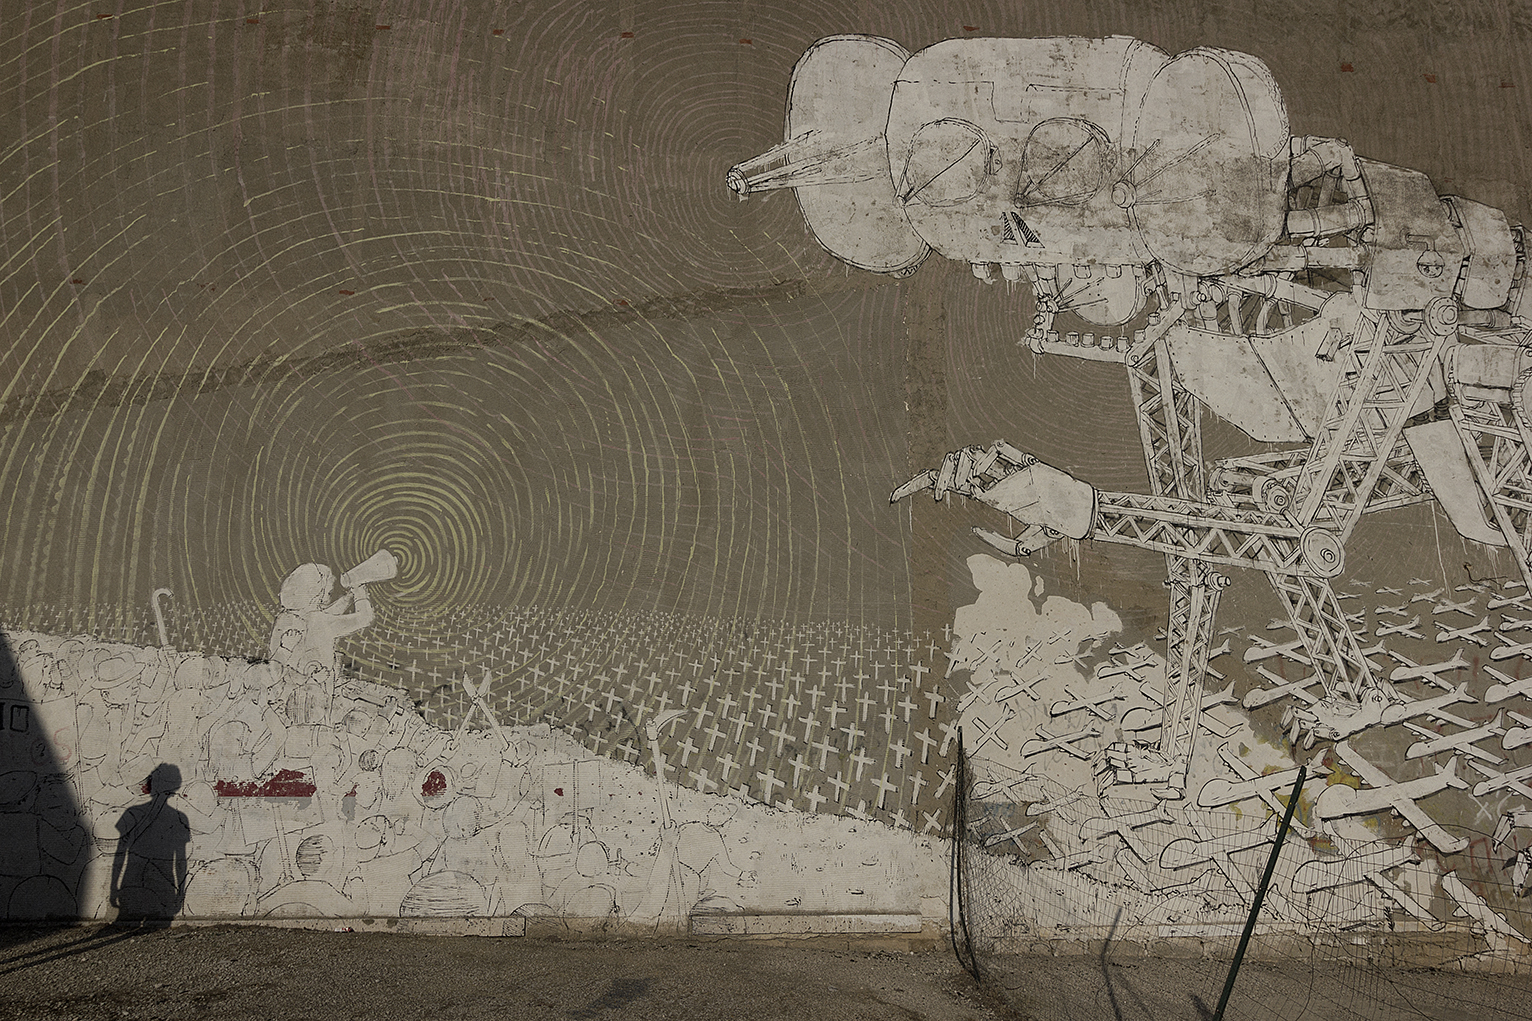  Niscemi (CL), Luglio 2017. Uno dei tre murales del famoso street artist italiano Blu a Niscemi. Nel 2013 ha aderito al Comitato degli Artisti No MUOS, lasciando in dote tre preziosi graffiti sui muri della città siciliana. © Chiara Faggionato  